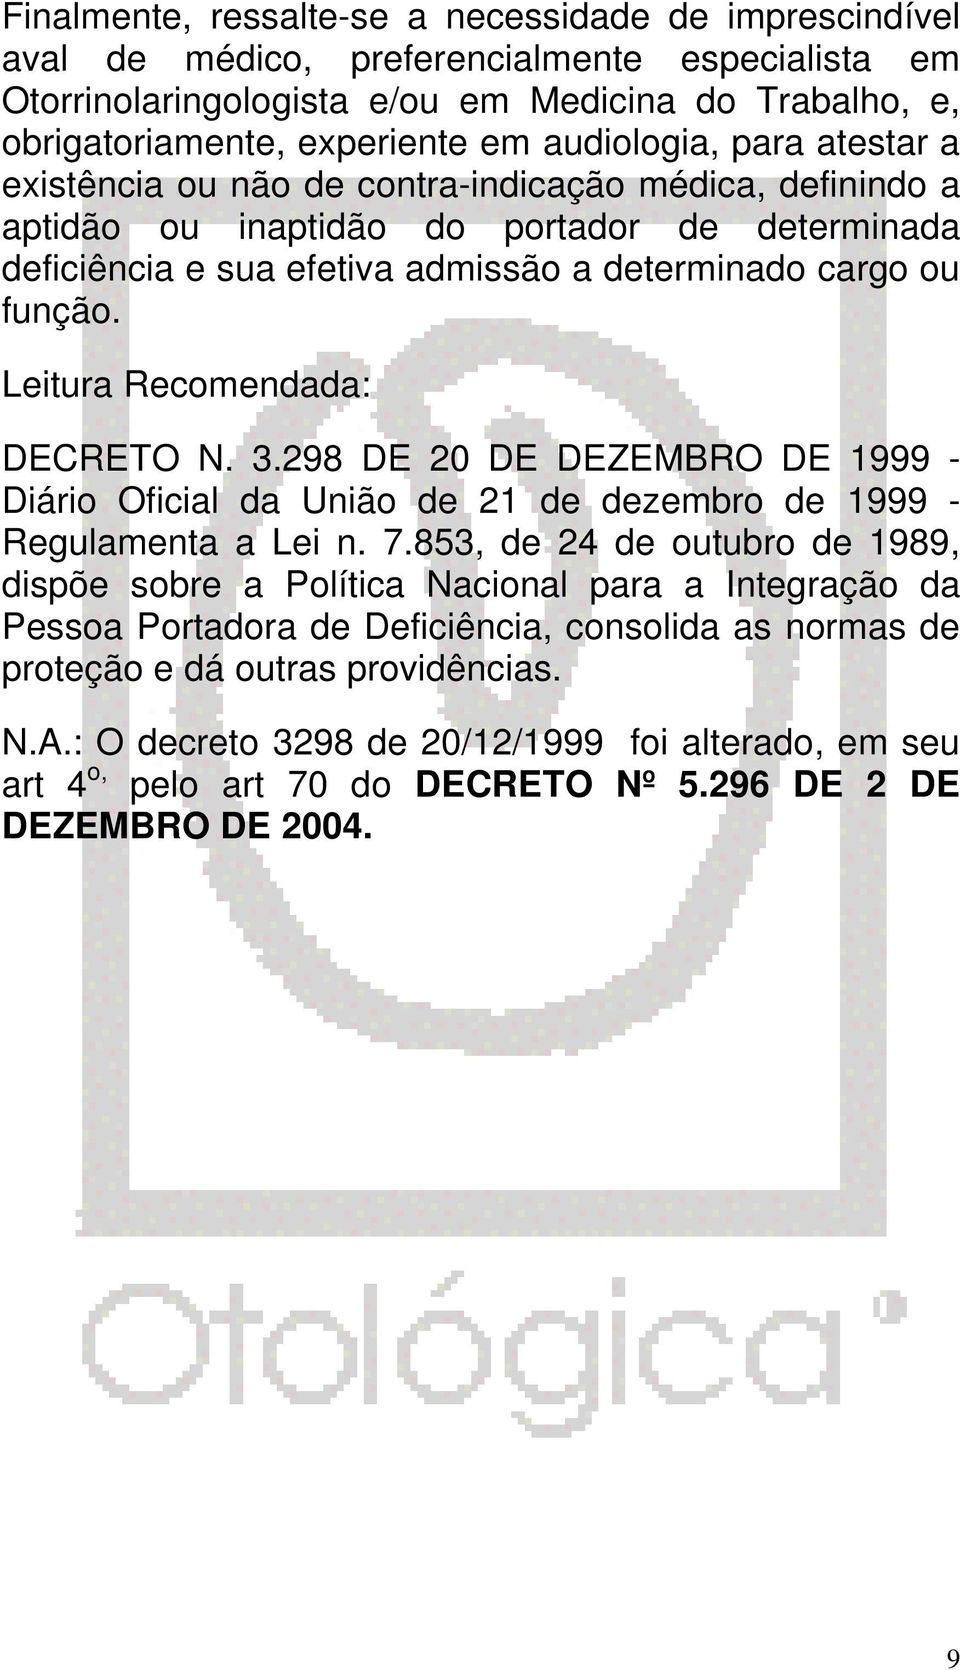 Leitura Recomendada: DECRETO N. 3.298 DE 20 DE DEZEMBRO DE 1999 - Diário Oficial da União de 21 de dezembro de 1999 - Regulamenta a Lei n. 7.